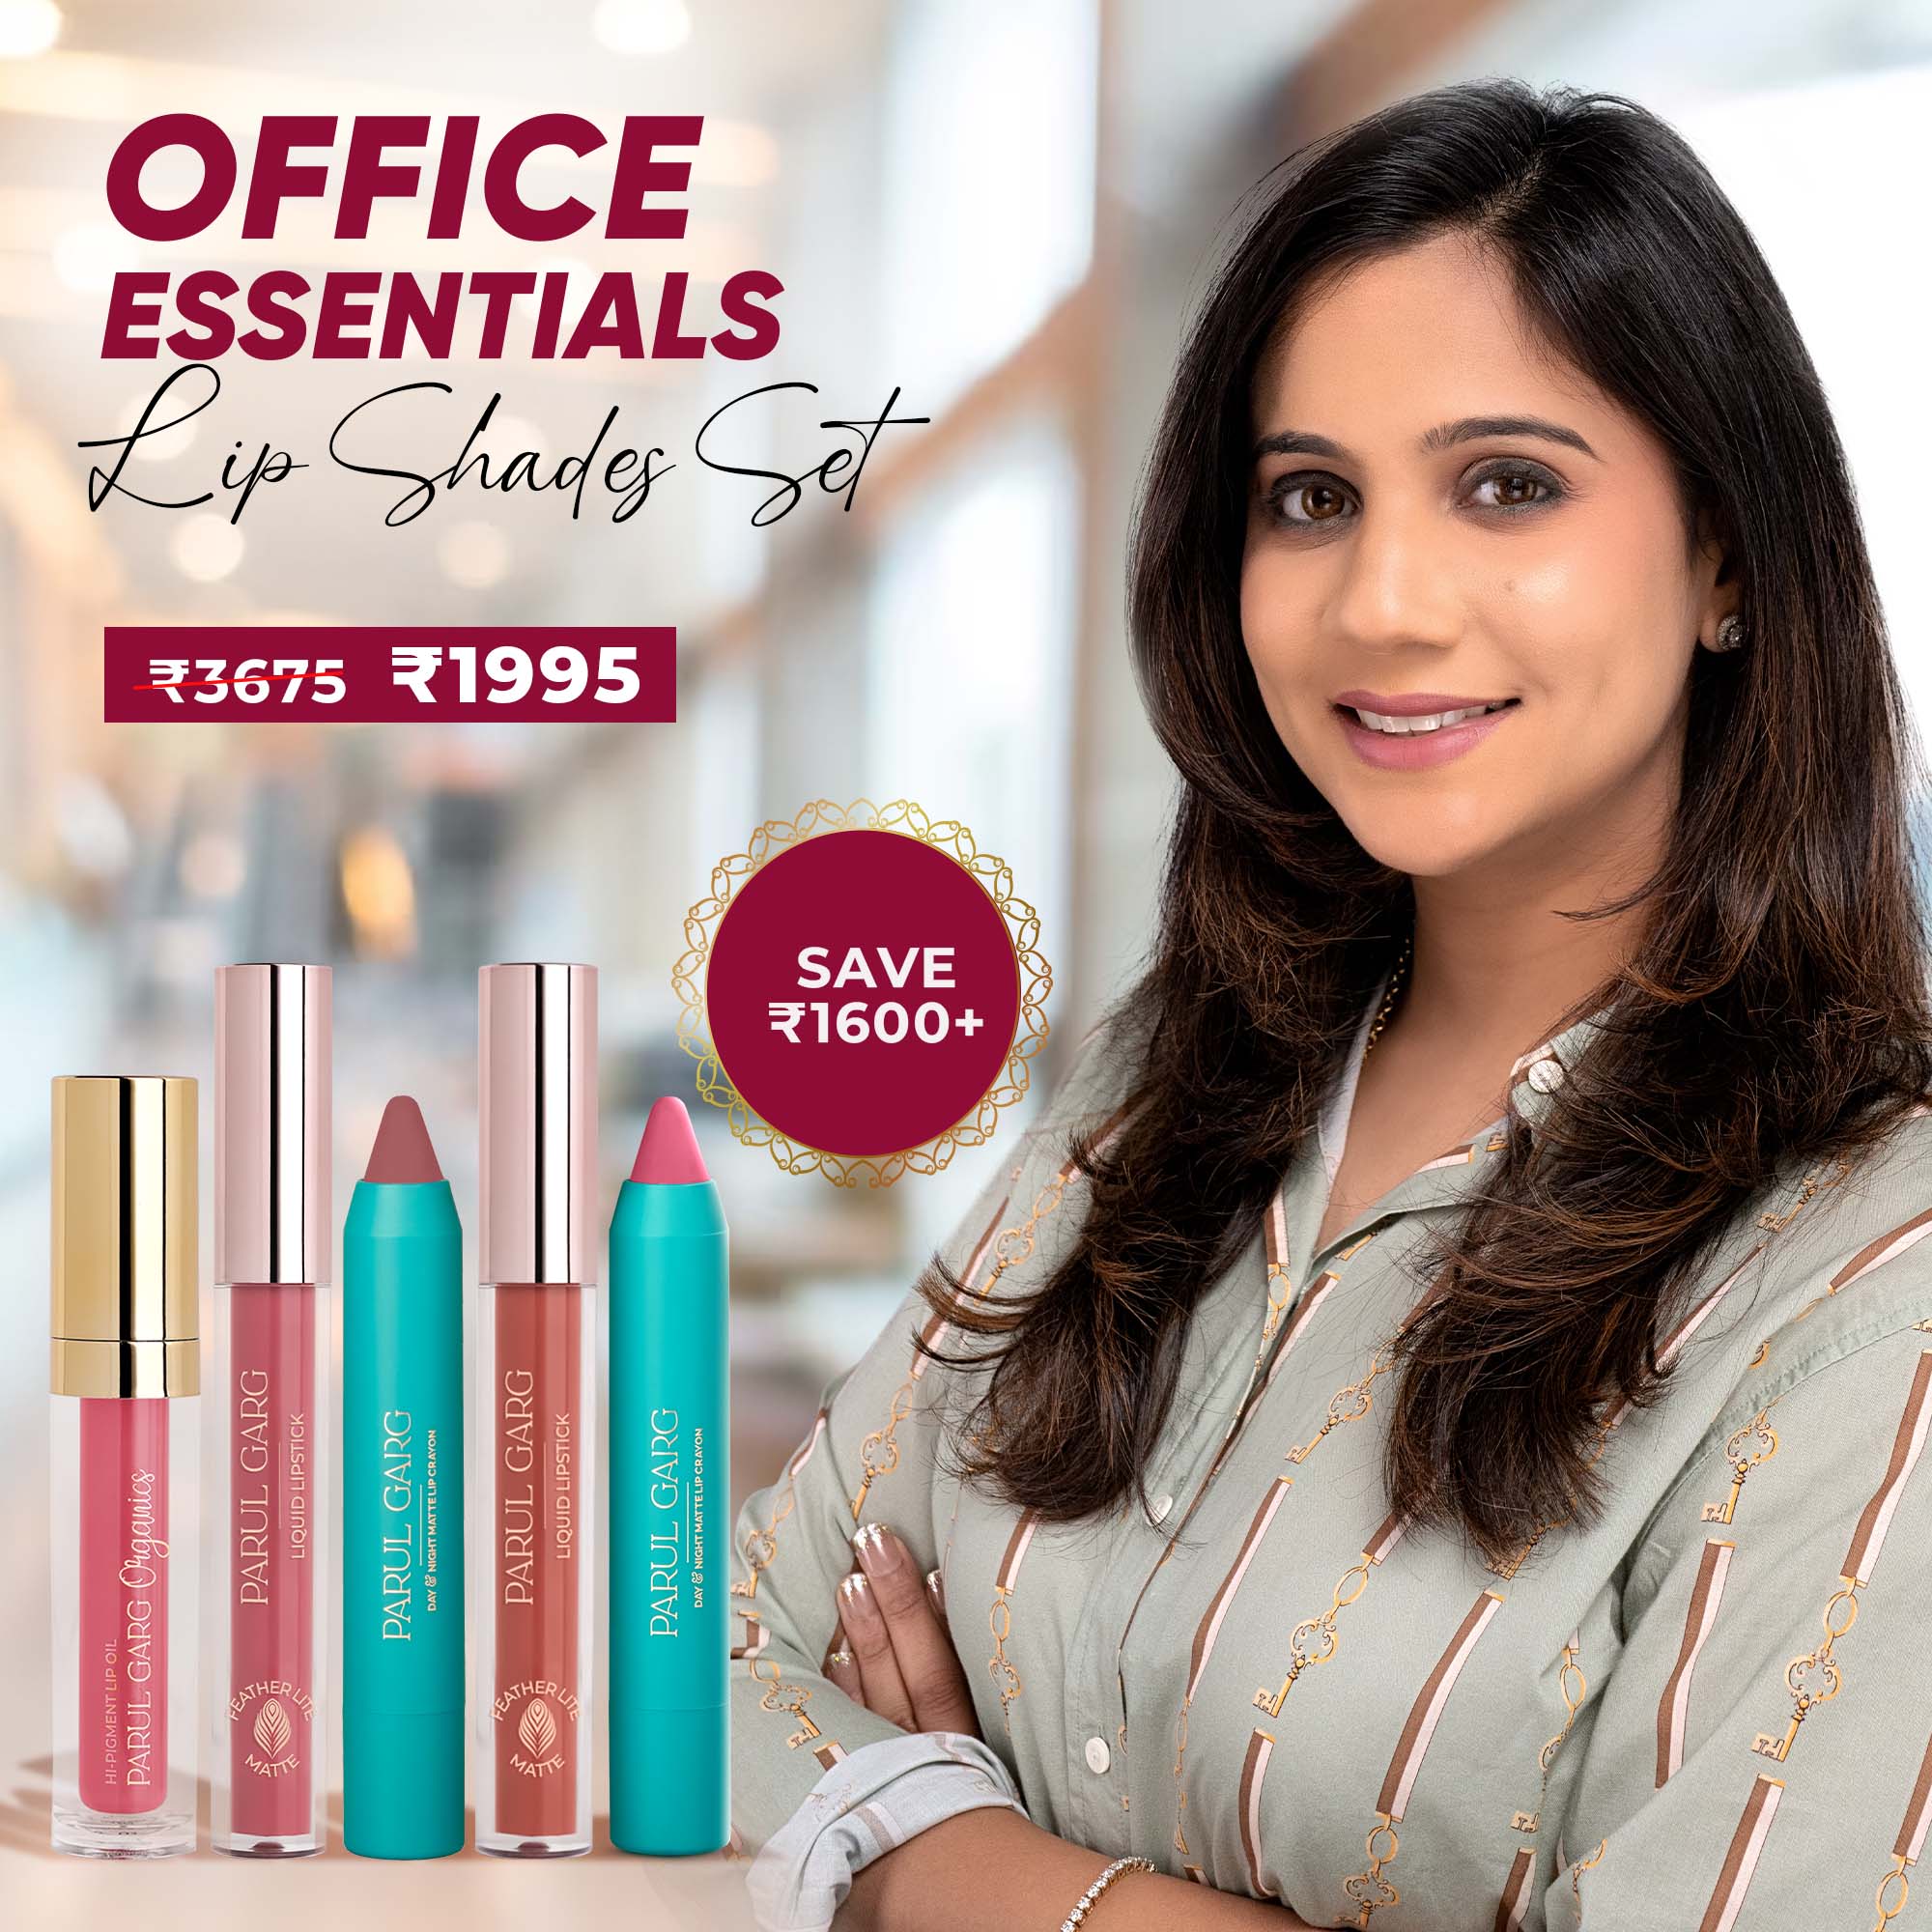 Office Essentials Lip Shades Set